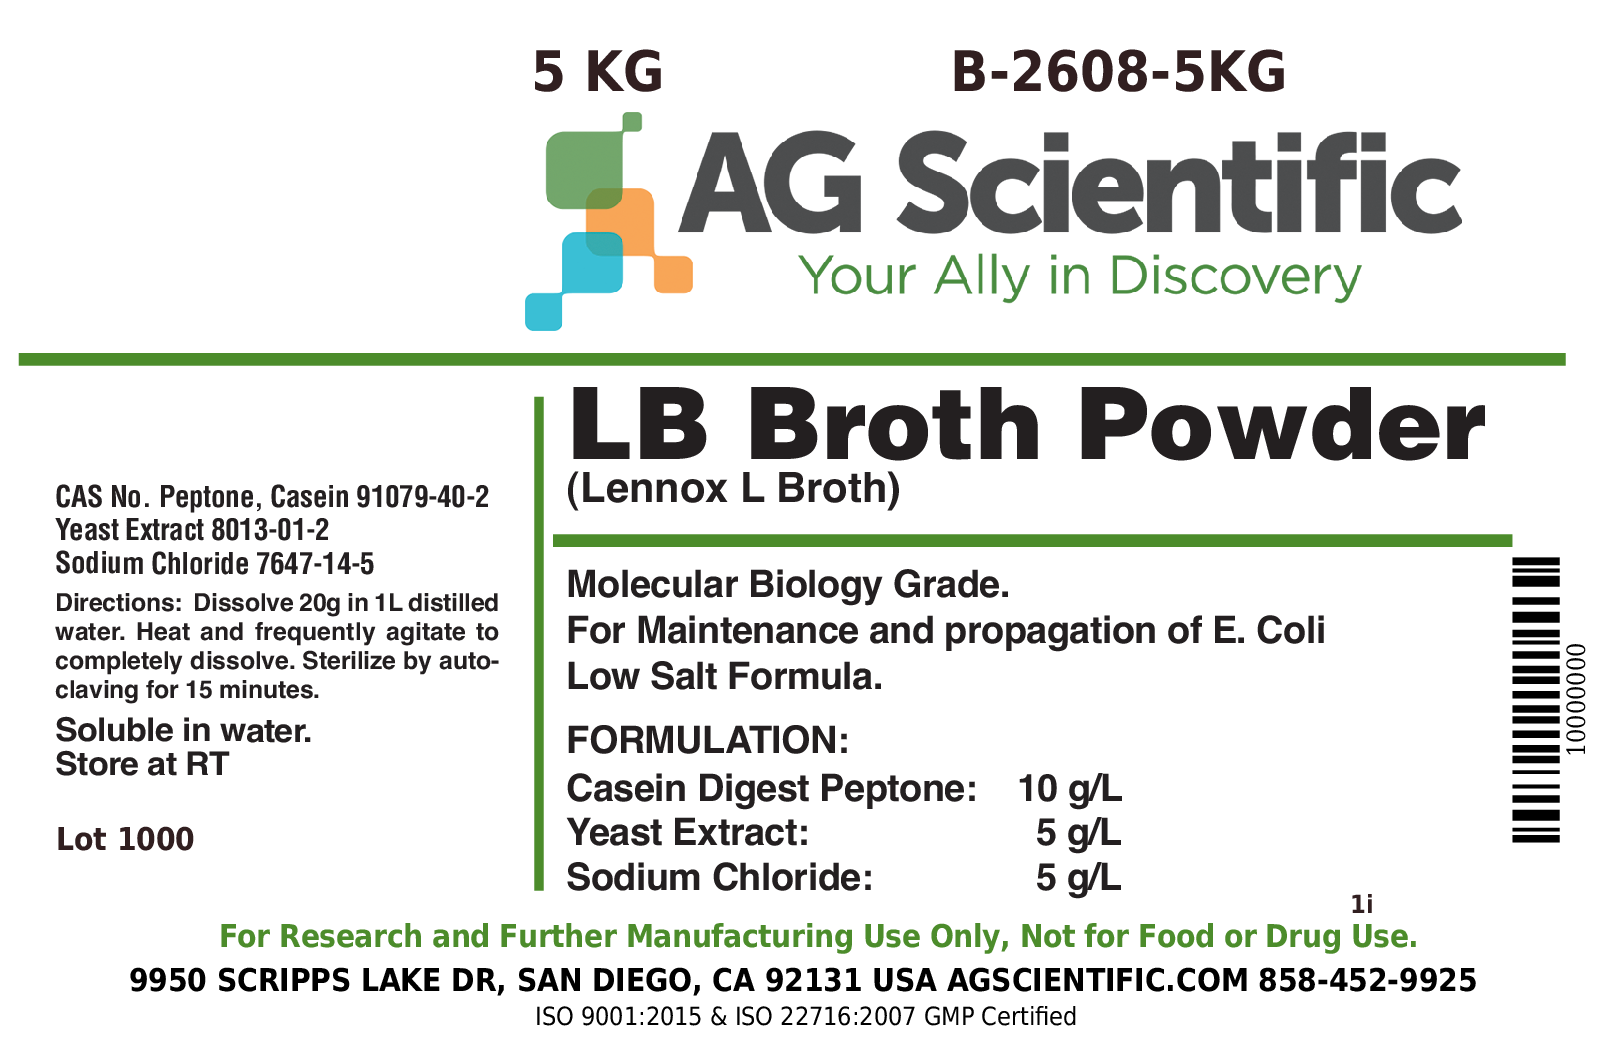 LB Broth [Lennox L Broth], Powder, 5 KG